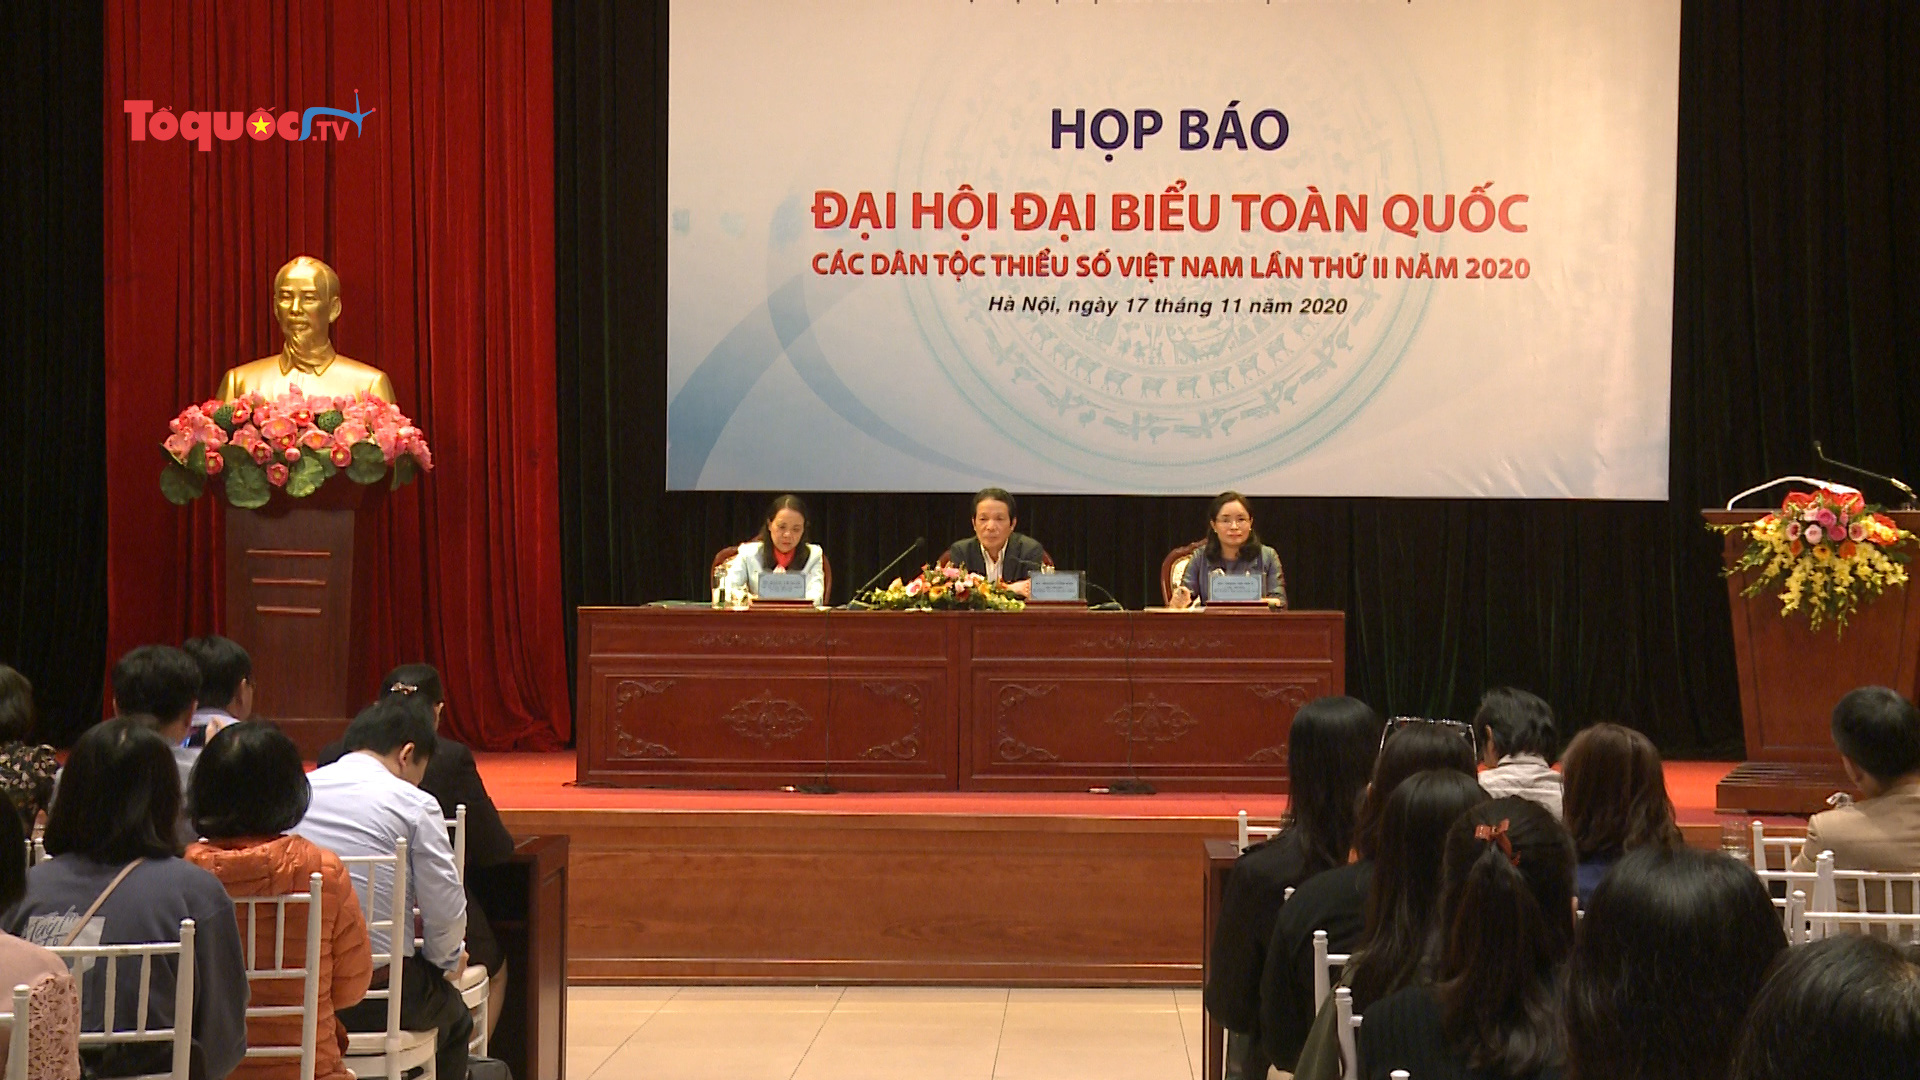 Đại hội đại biểu toàn quốc các dân tộc thiểu số Việt Nam lần thứ II sẽ diễn ra trong tháng 12